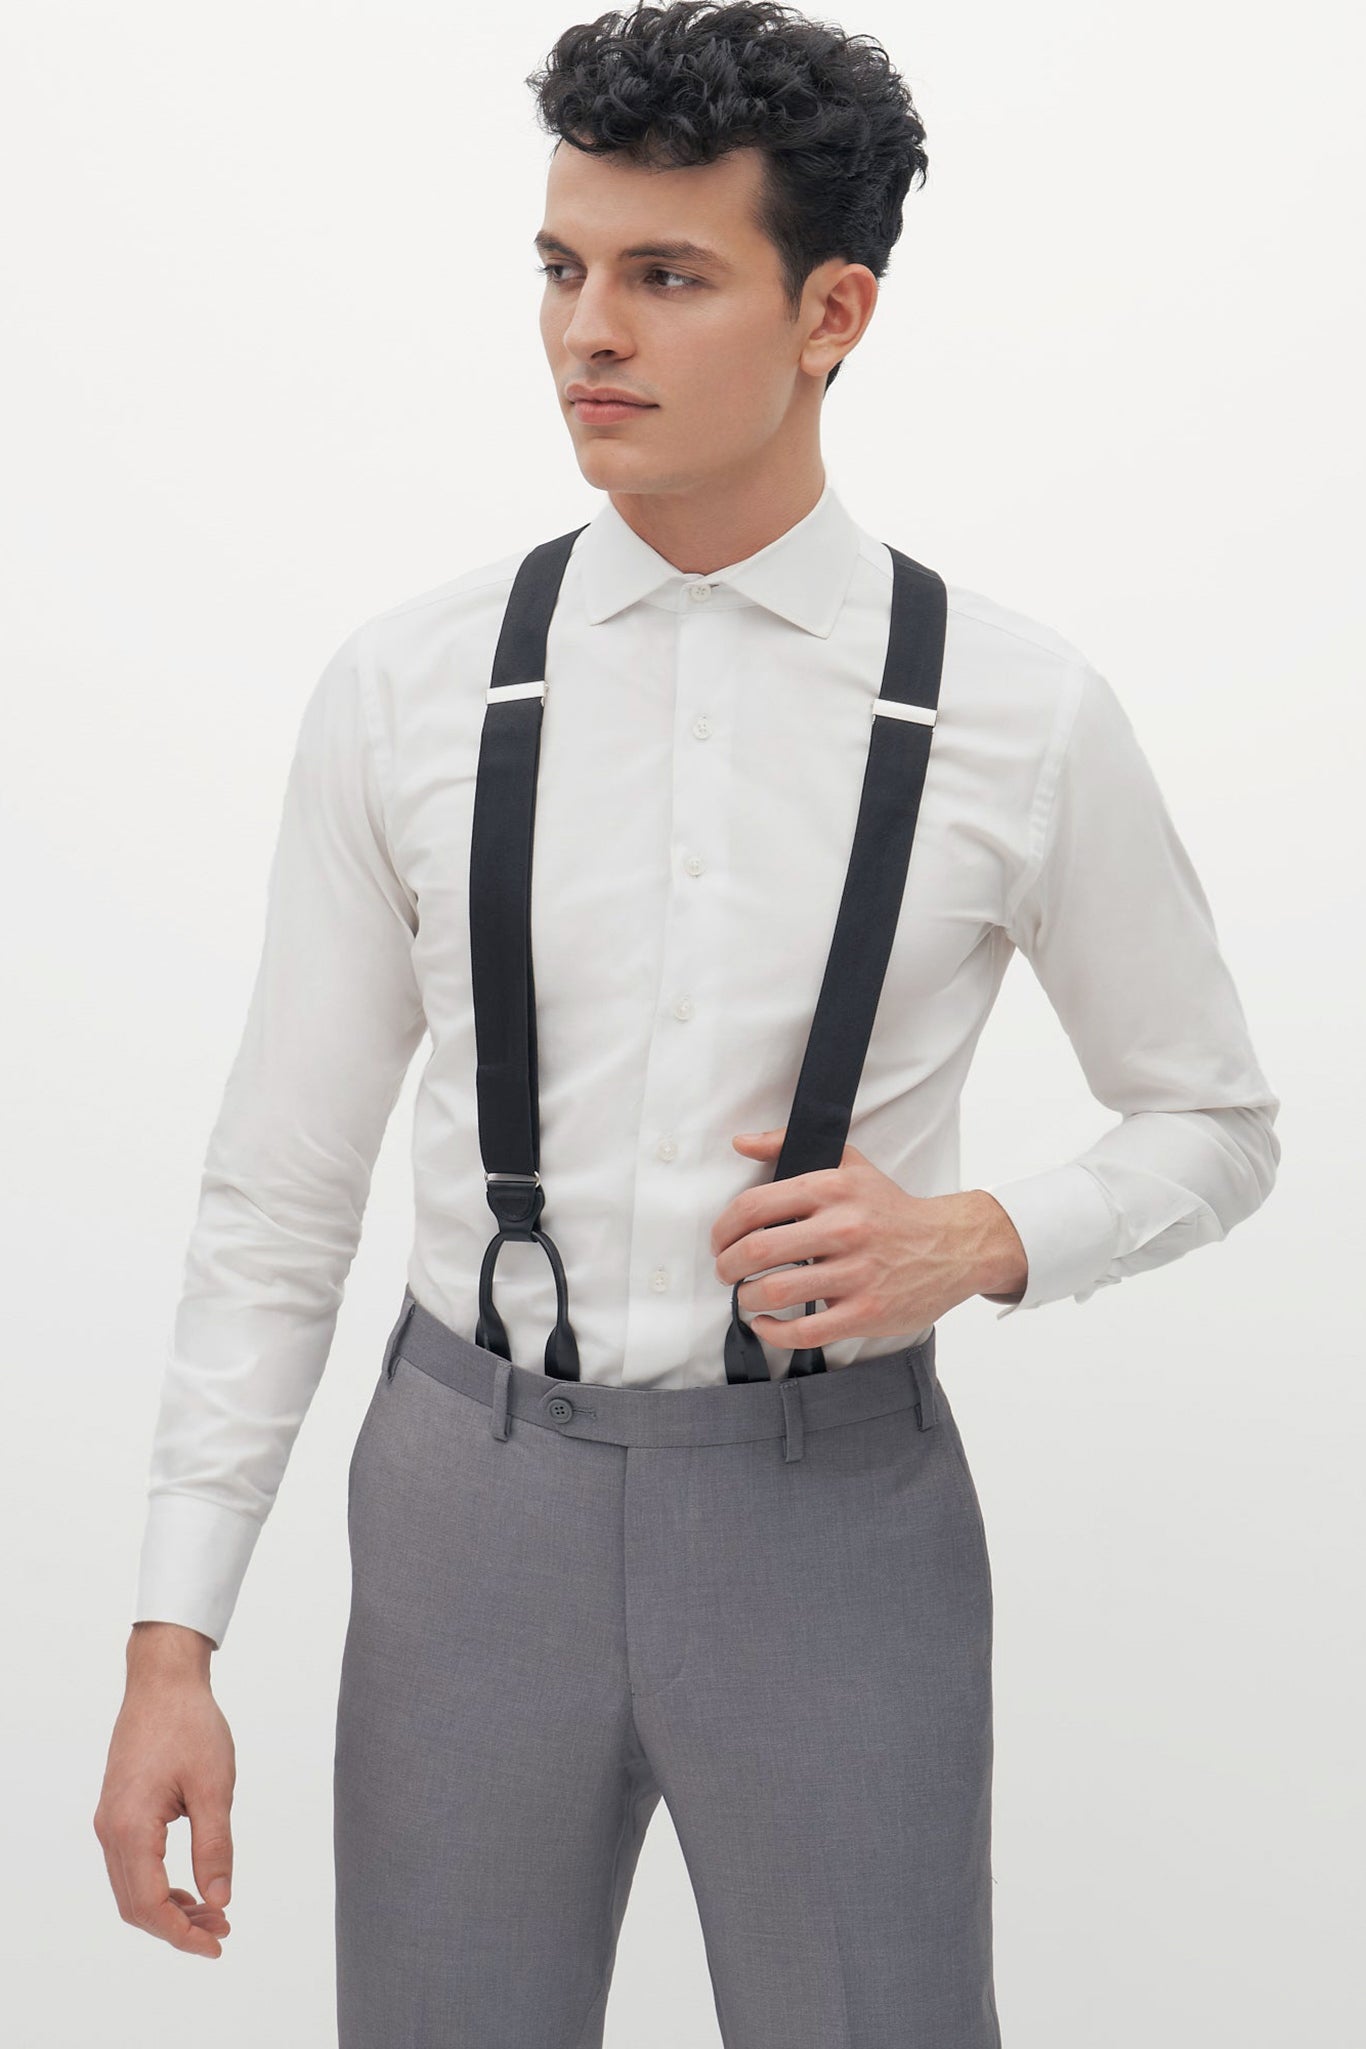 Grosgrain Suspenders By Suitshop - Black